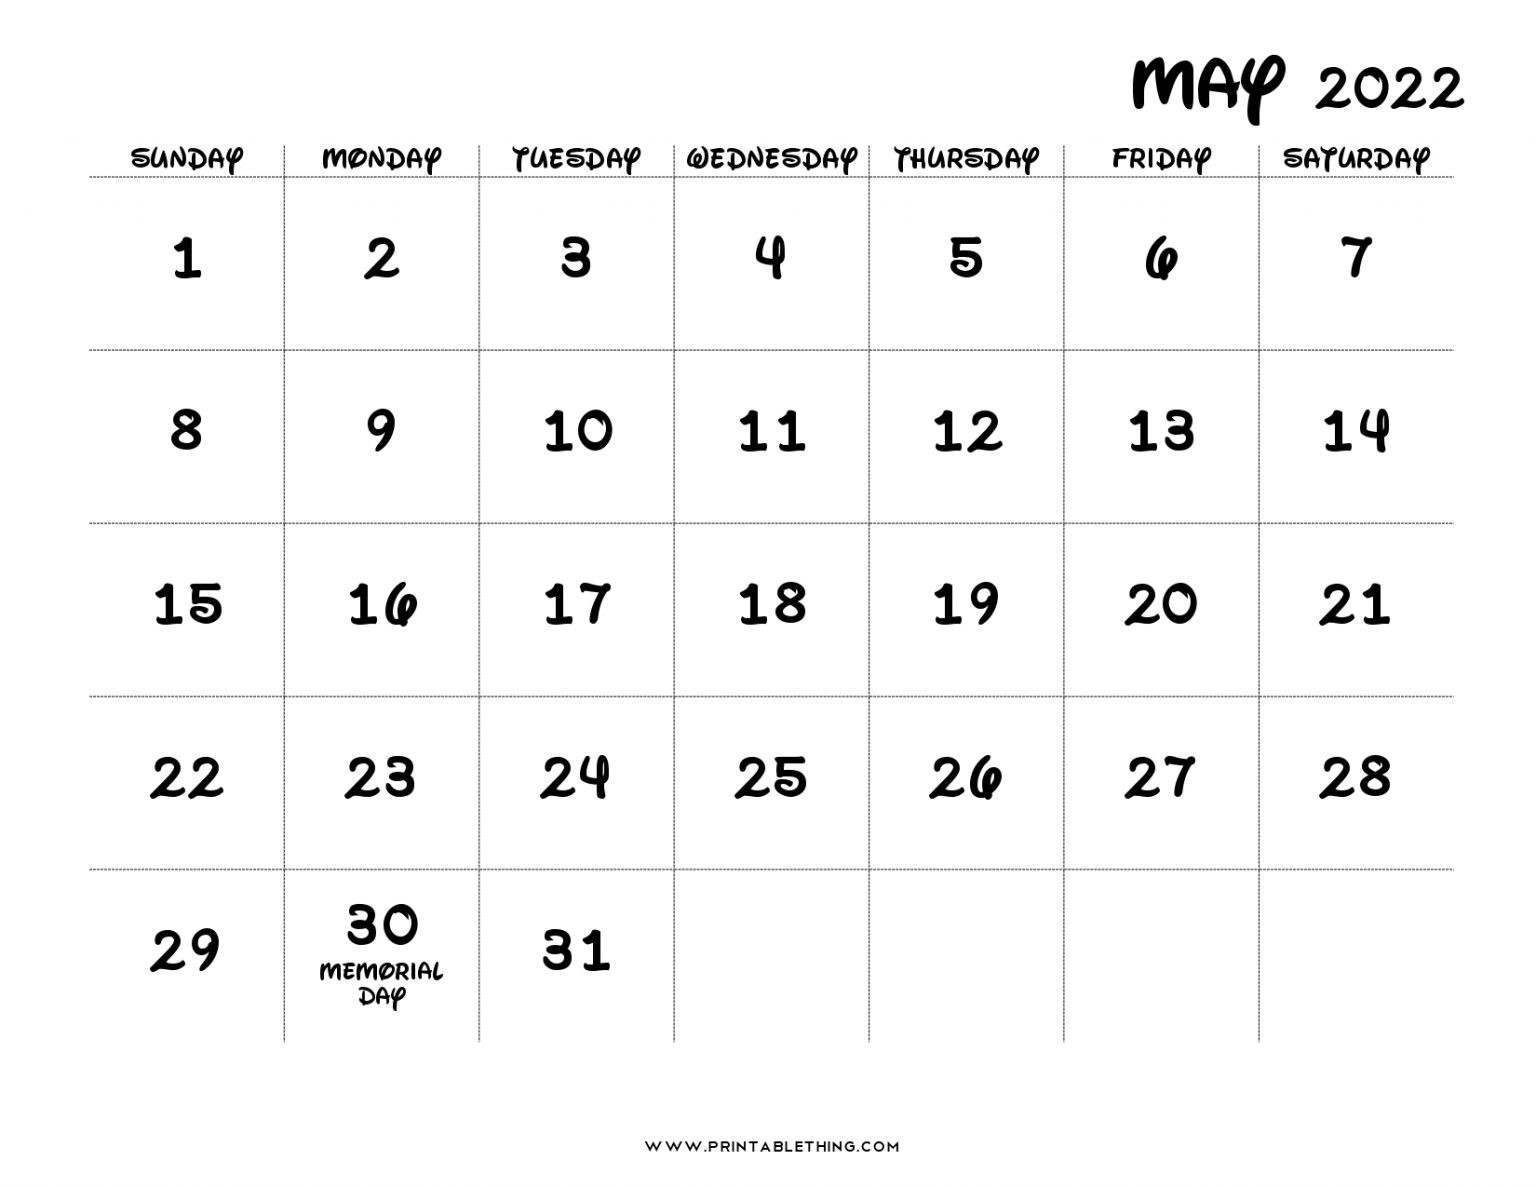 May 2022 Calendar | Printable, Pdf, Us Holidays, 2022  May 2022 Calendar Printable